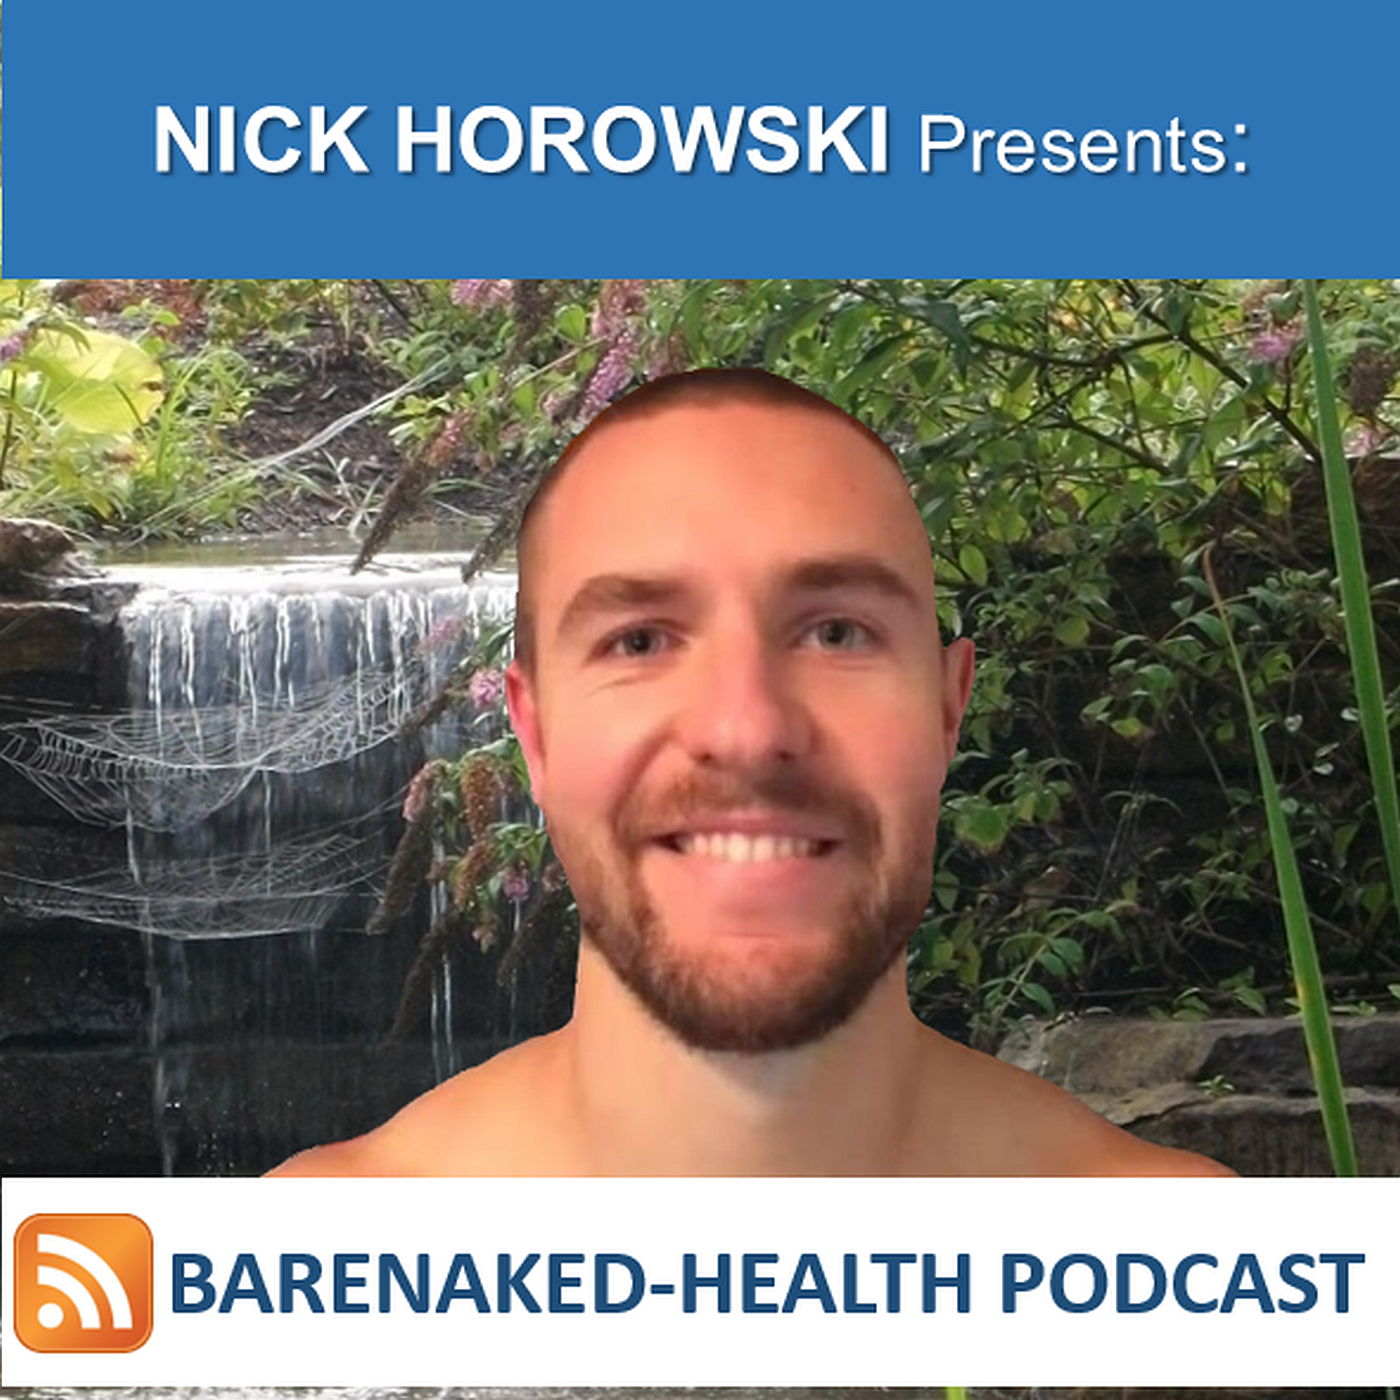 BareNaked Health Podcast